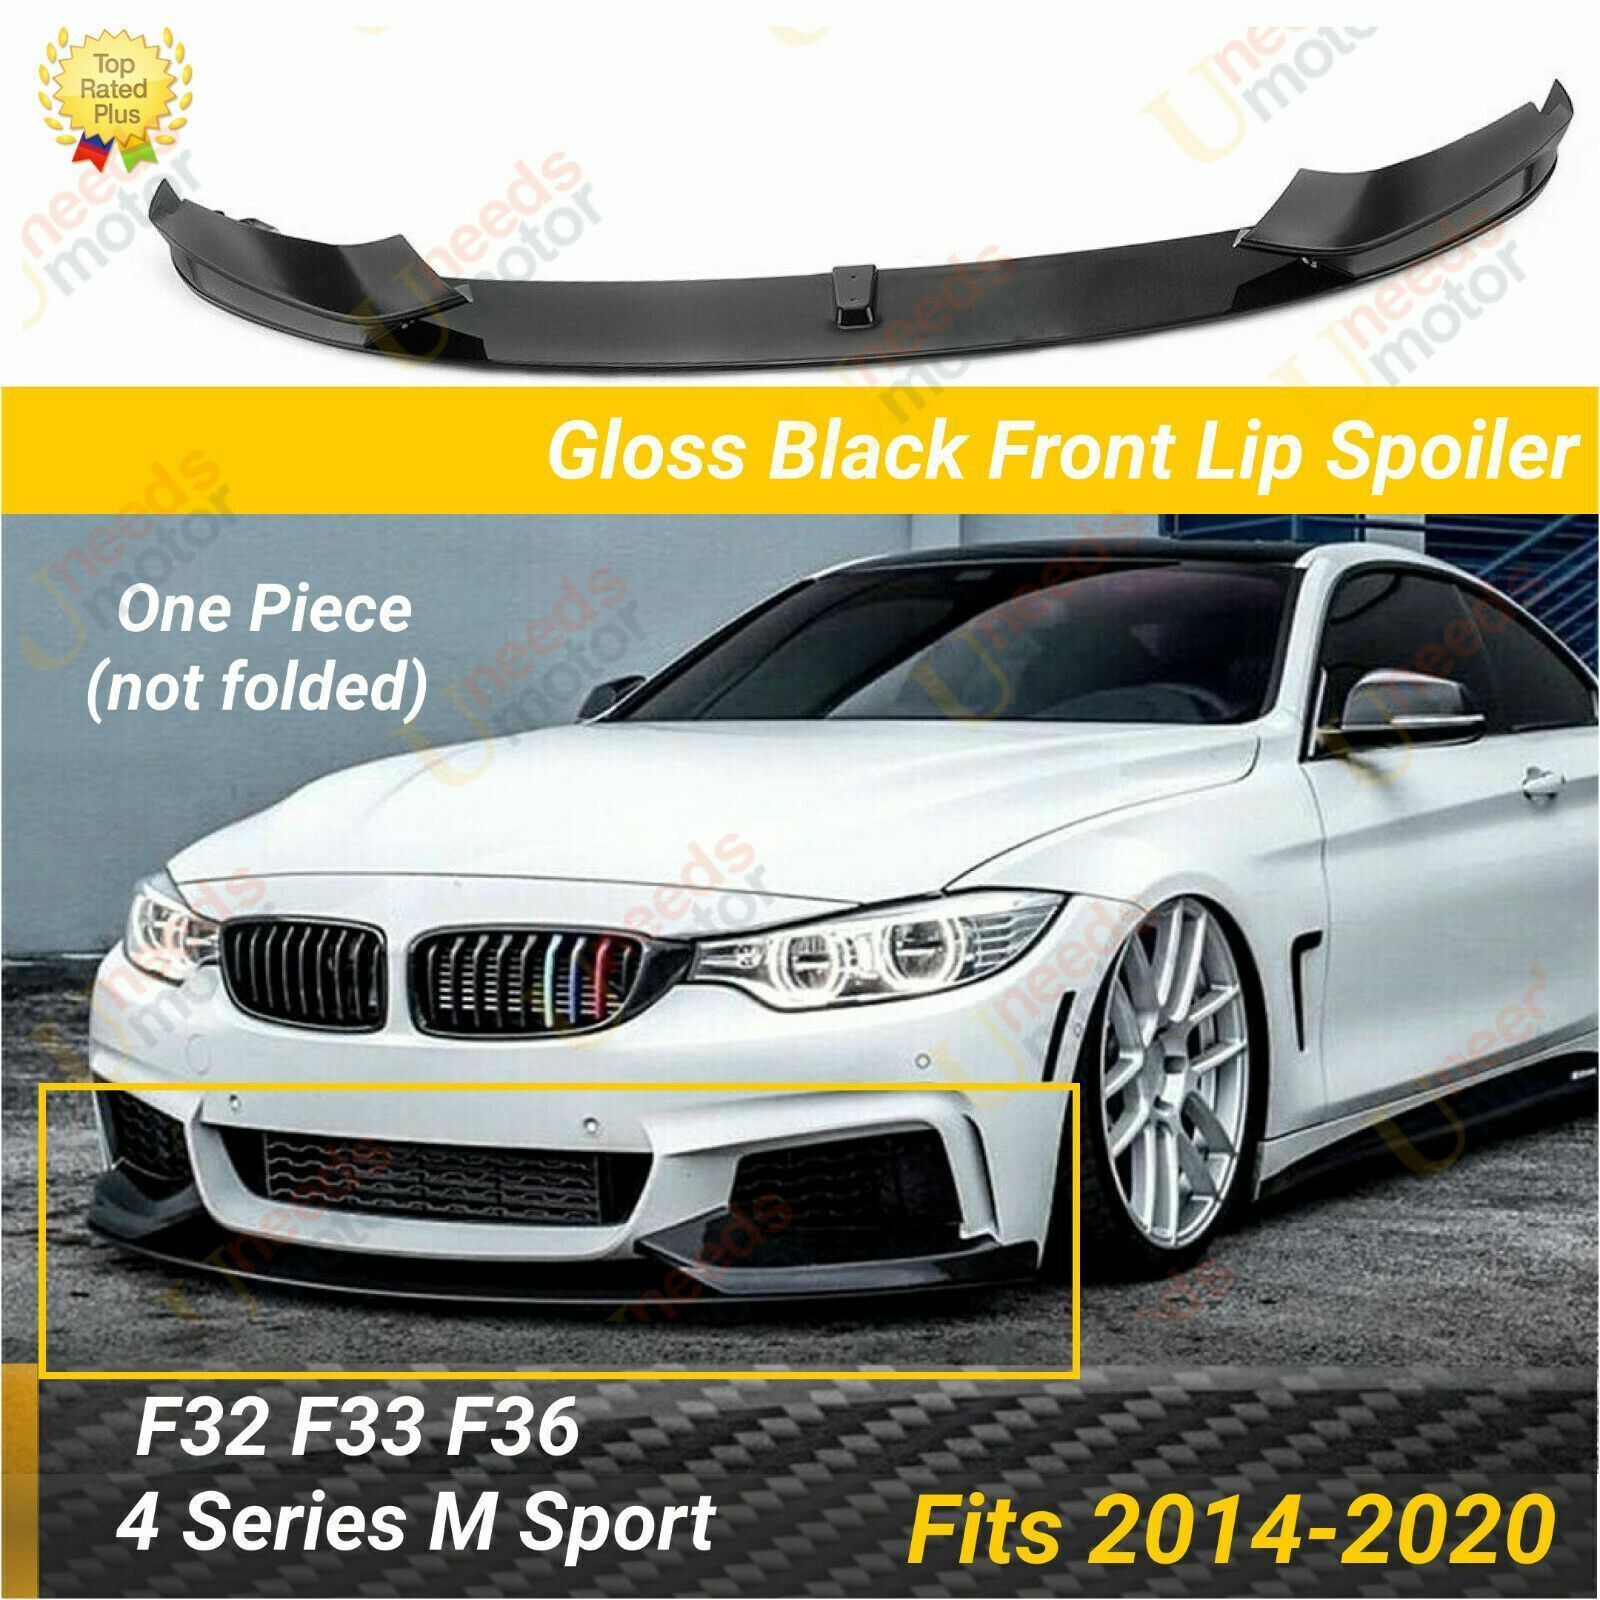 Fits 2014-2020 BMW F32 F33 F36 4 Series M Sport Glossy Black Front Lip Spoiler